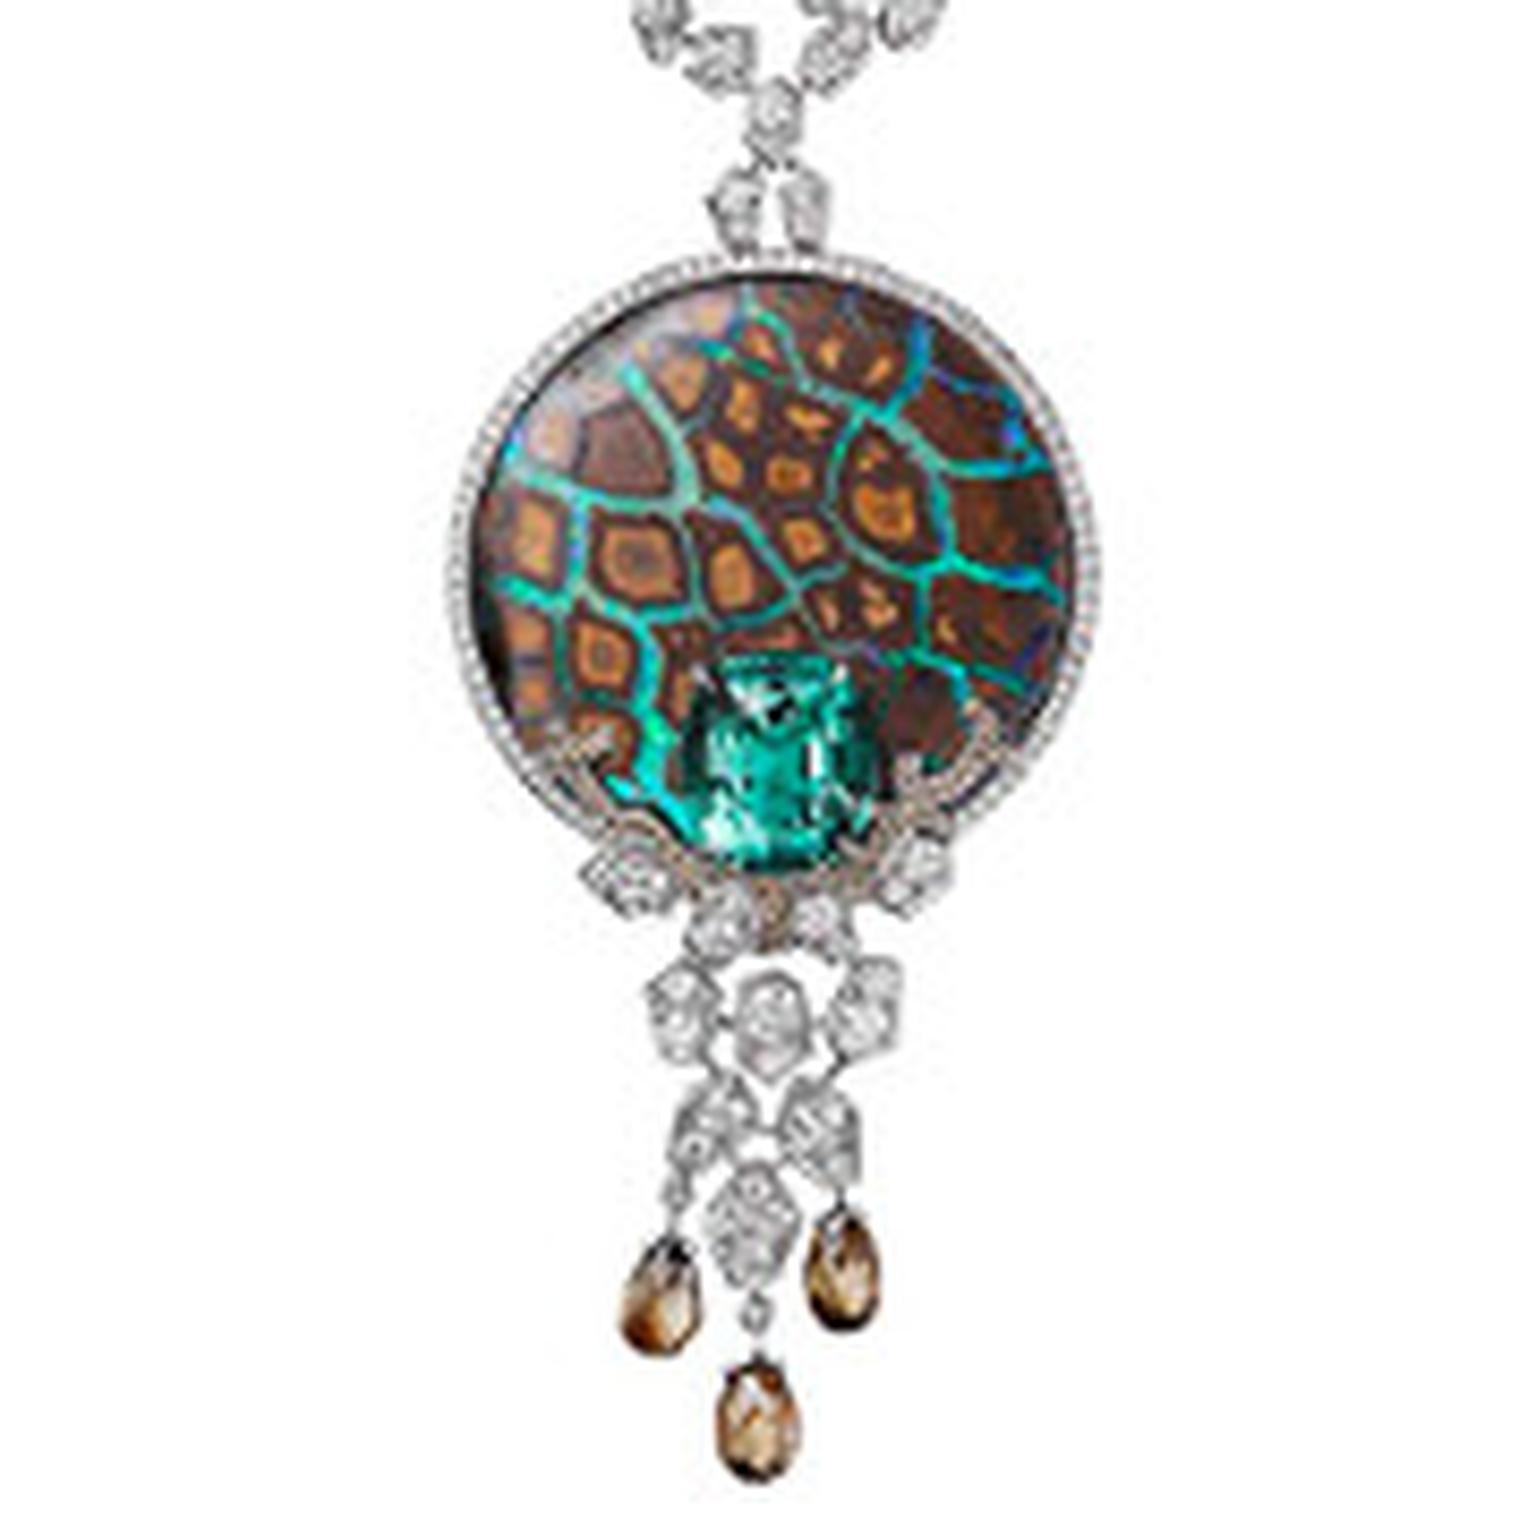 Cartier opal necklace